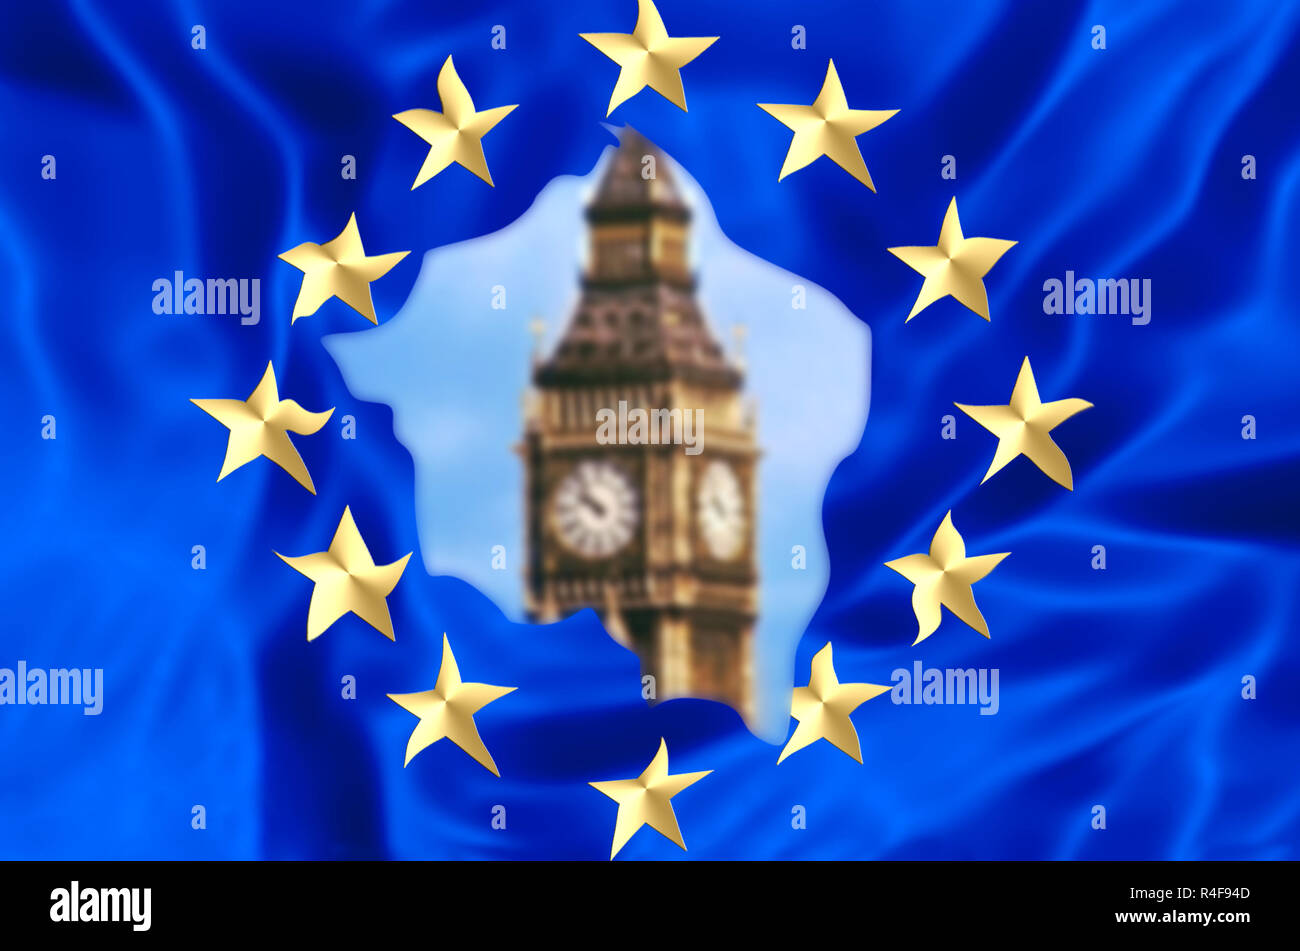 Bandera europea roto por el Reino Unido salga borrosa con el Big Ben Torre de Londres, la casa del parlamento británico. El concepto financiero para Brexit y división de la UE. Foto de stock